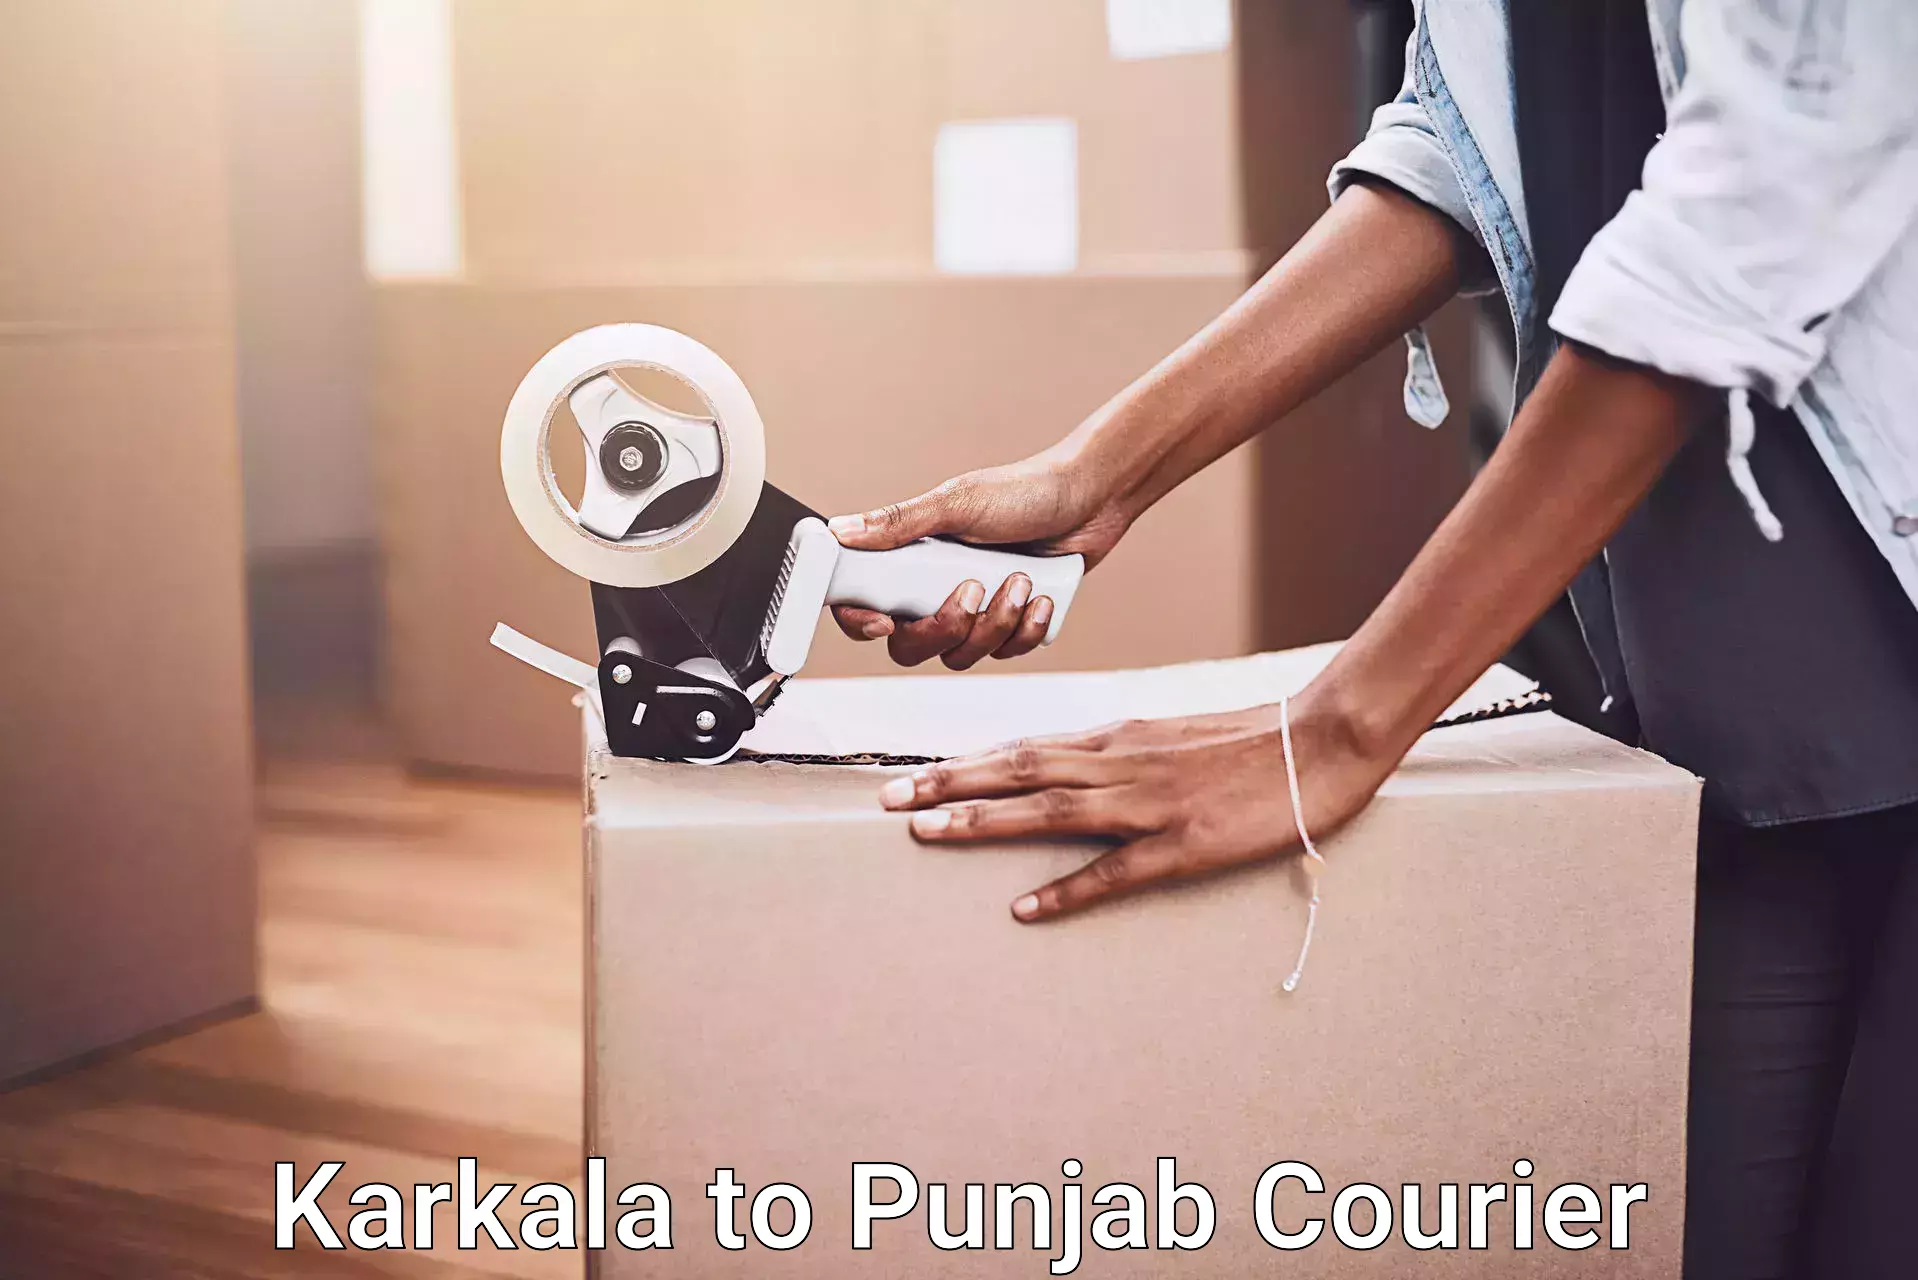 Household movers Karkala to Punjab